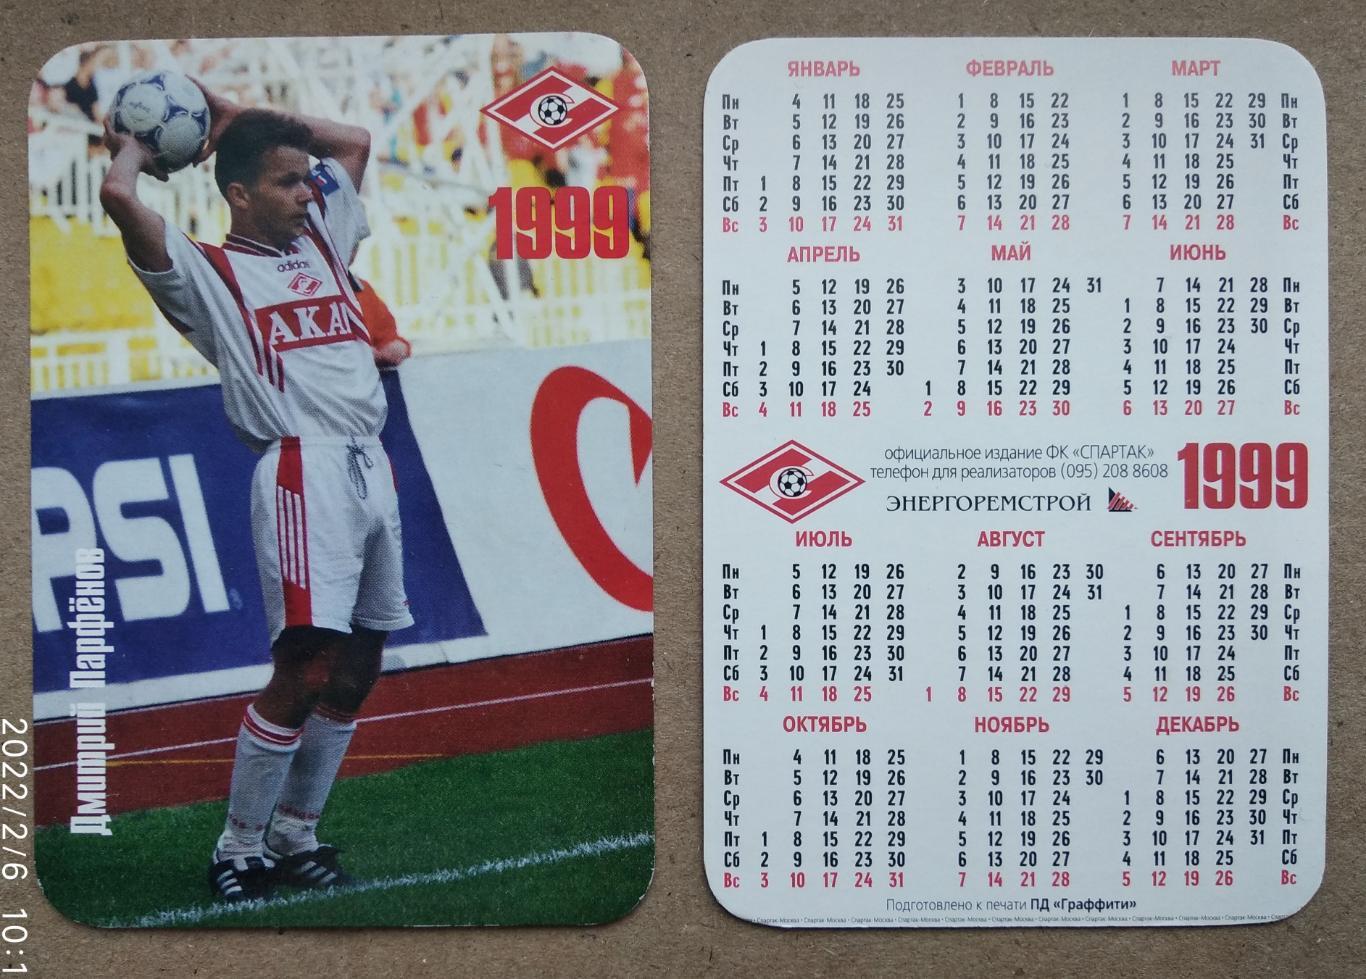 Спартак Москва - Парфенов , календарик на 1999 год, официальное издание